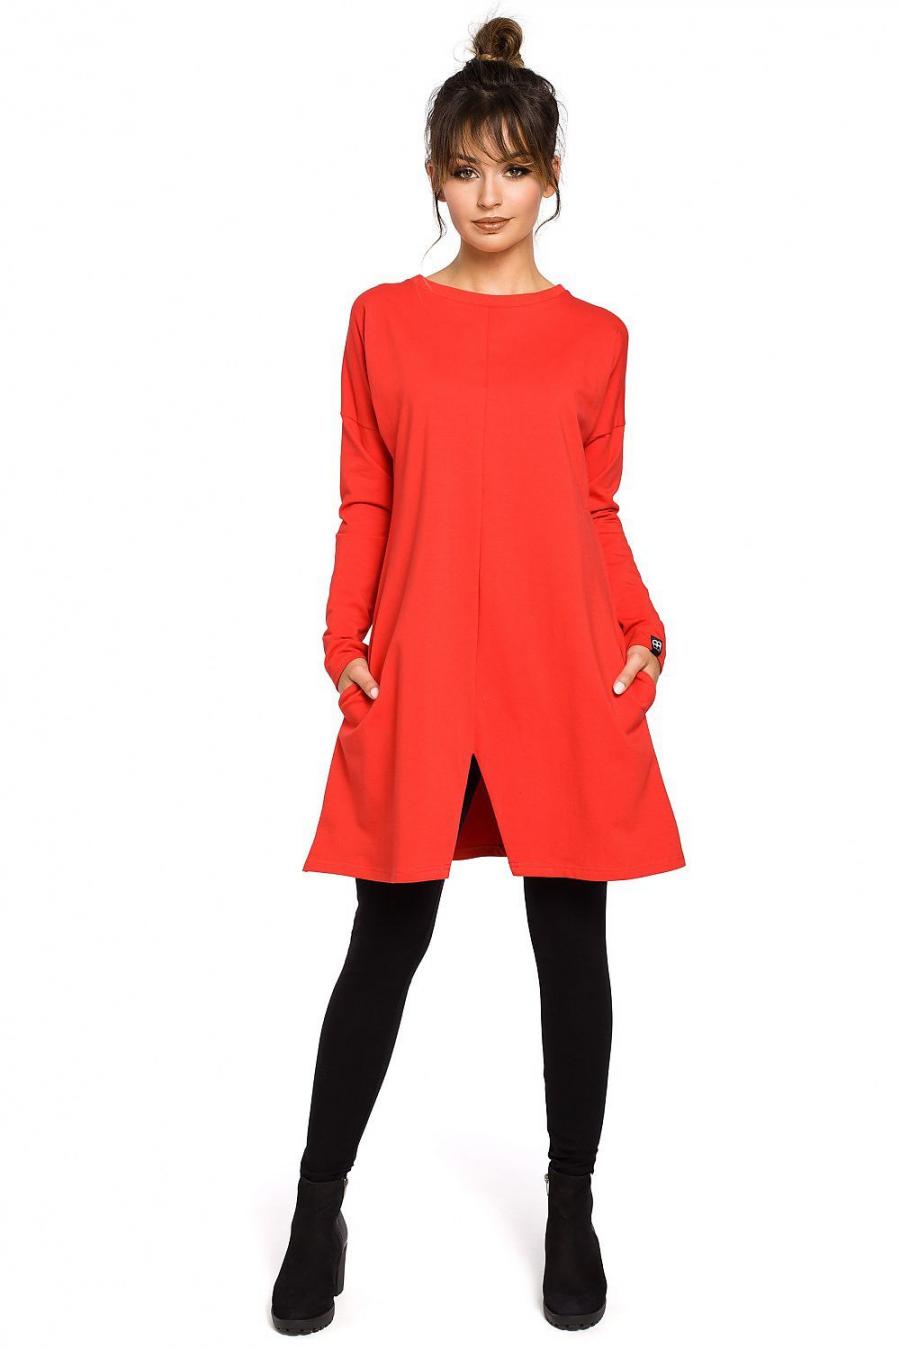 Ostatní značky šaty dámské 104253 - červená - velikost L//XL